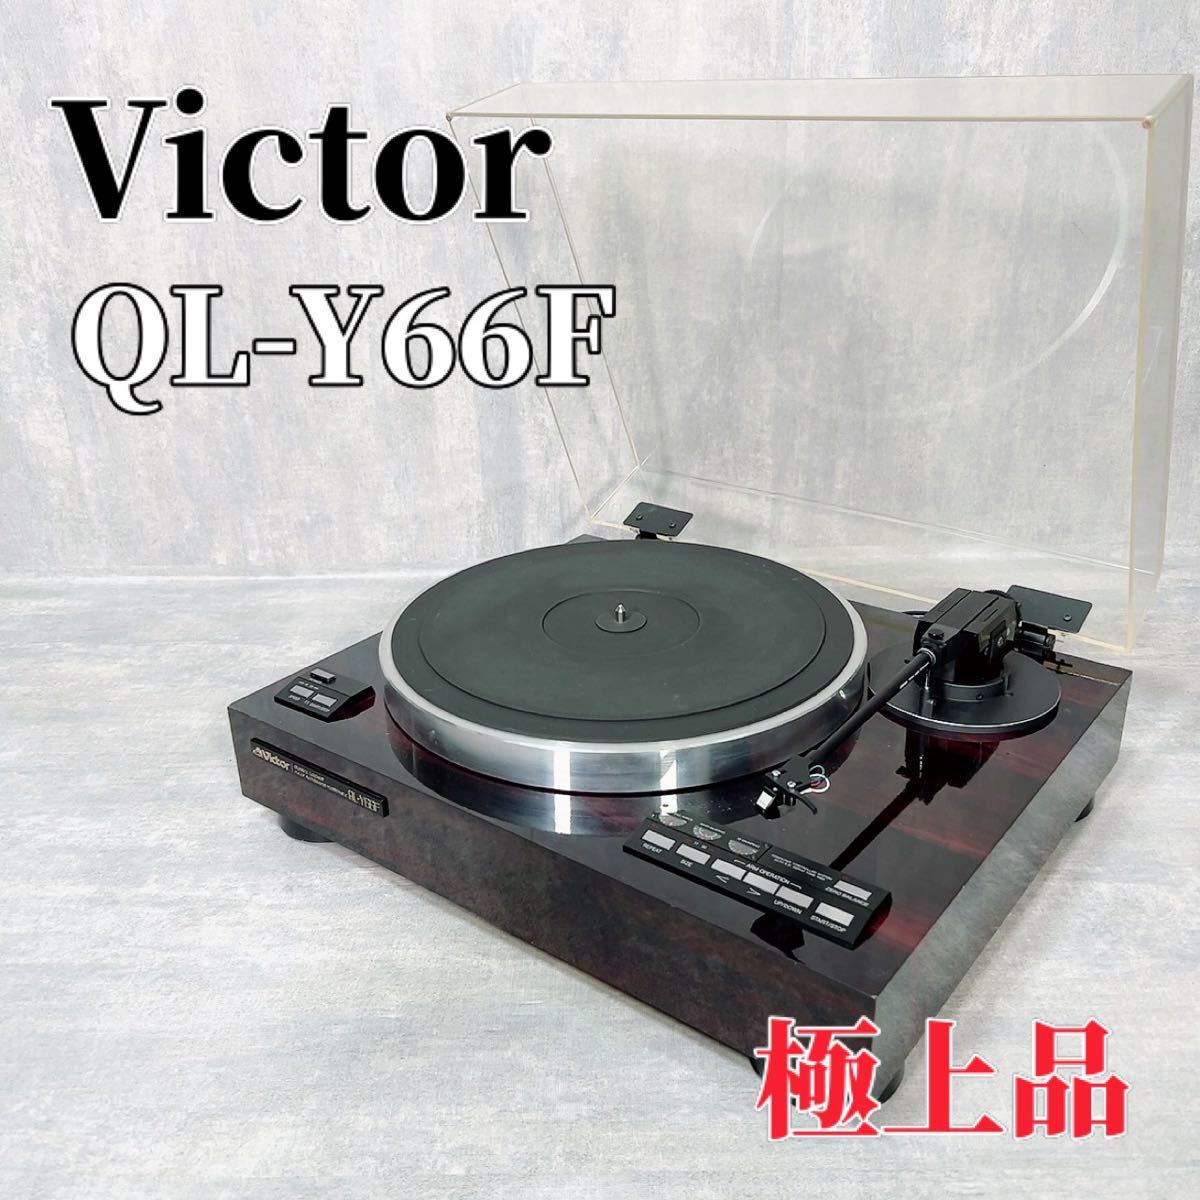 Victor Victor QL-Y66F проигрыватель запись плеер 